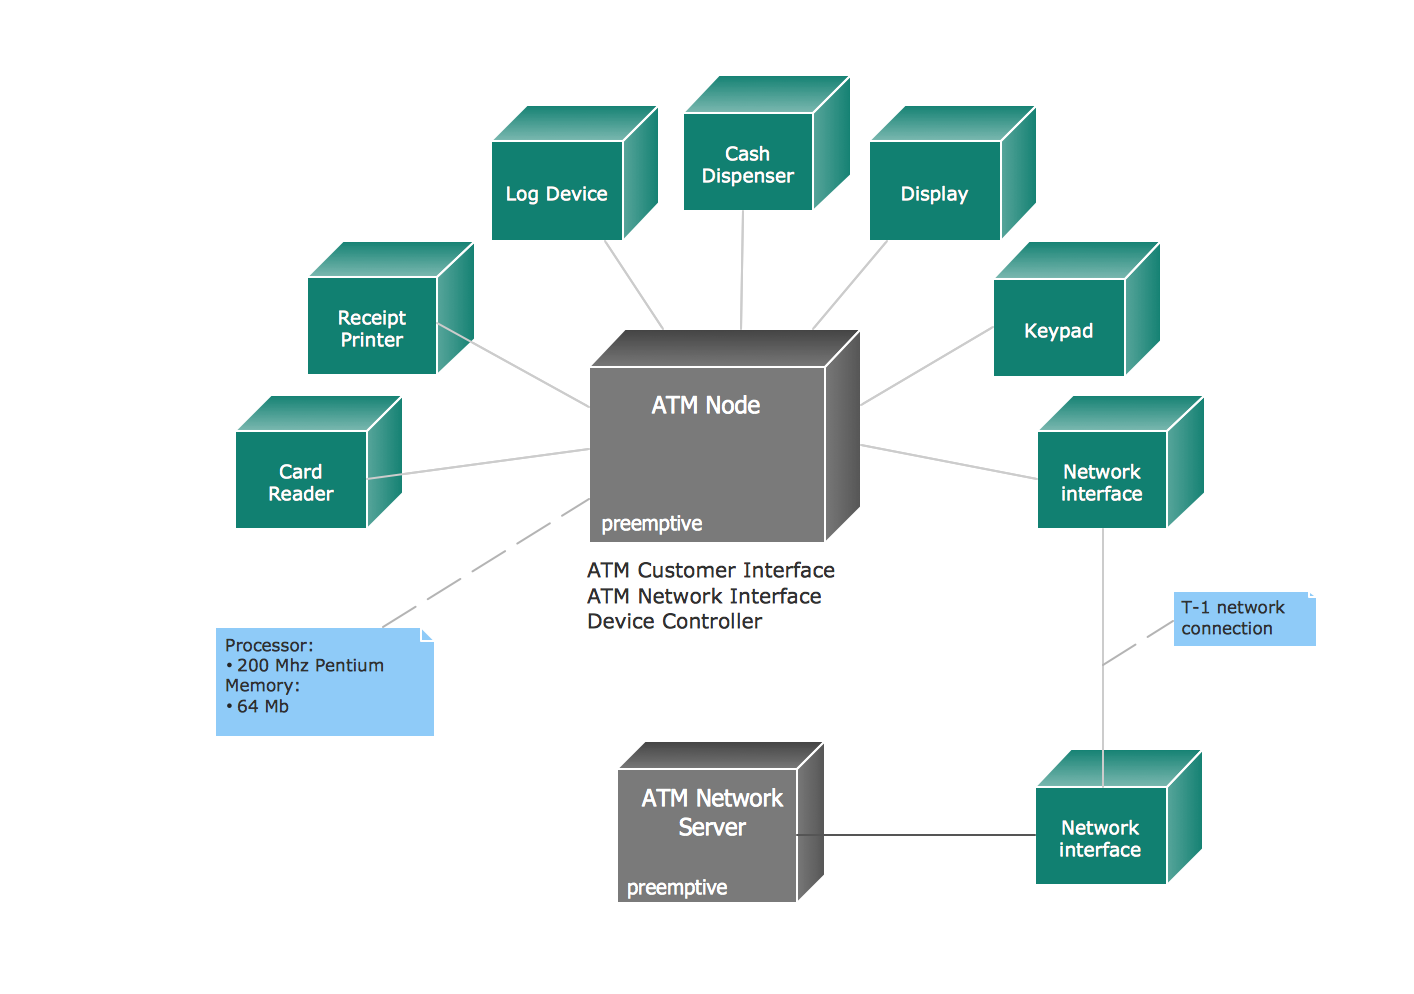 UML use case diagram - Banking system | UML Use Case ...